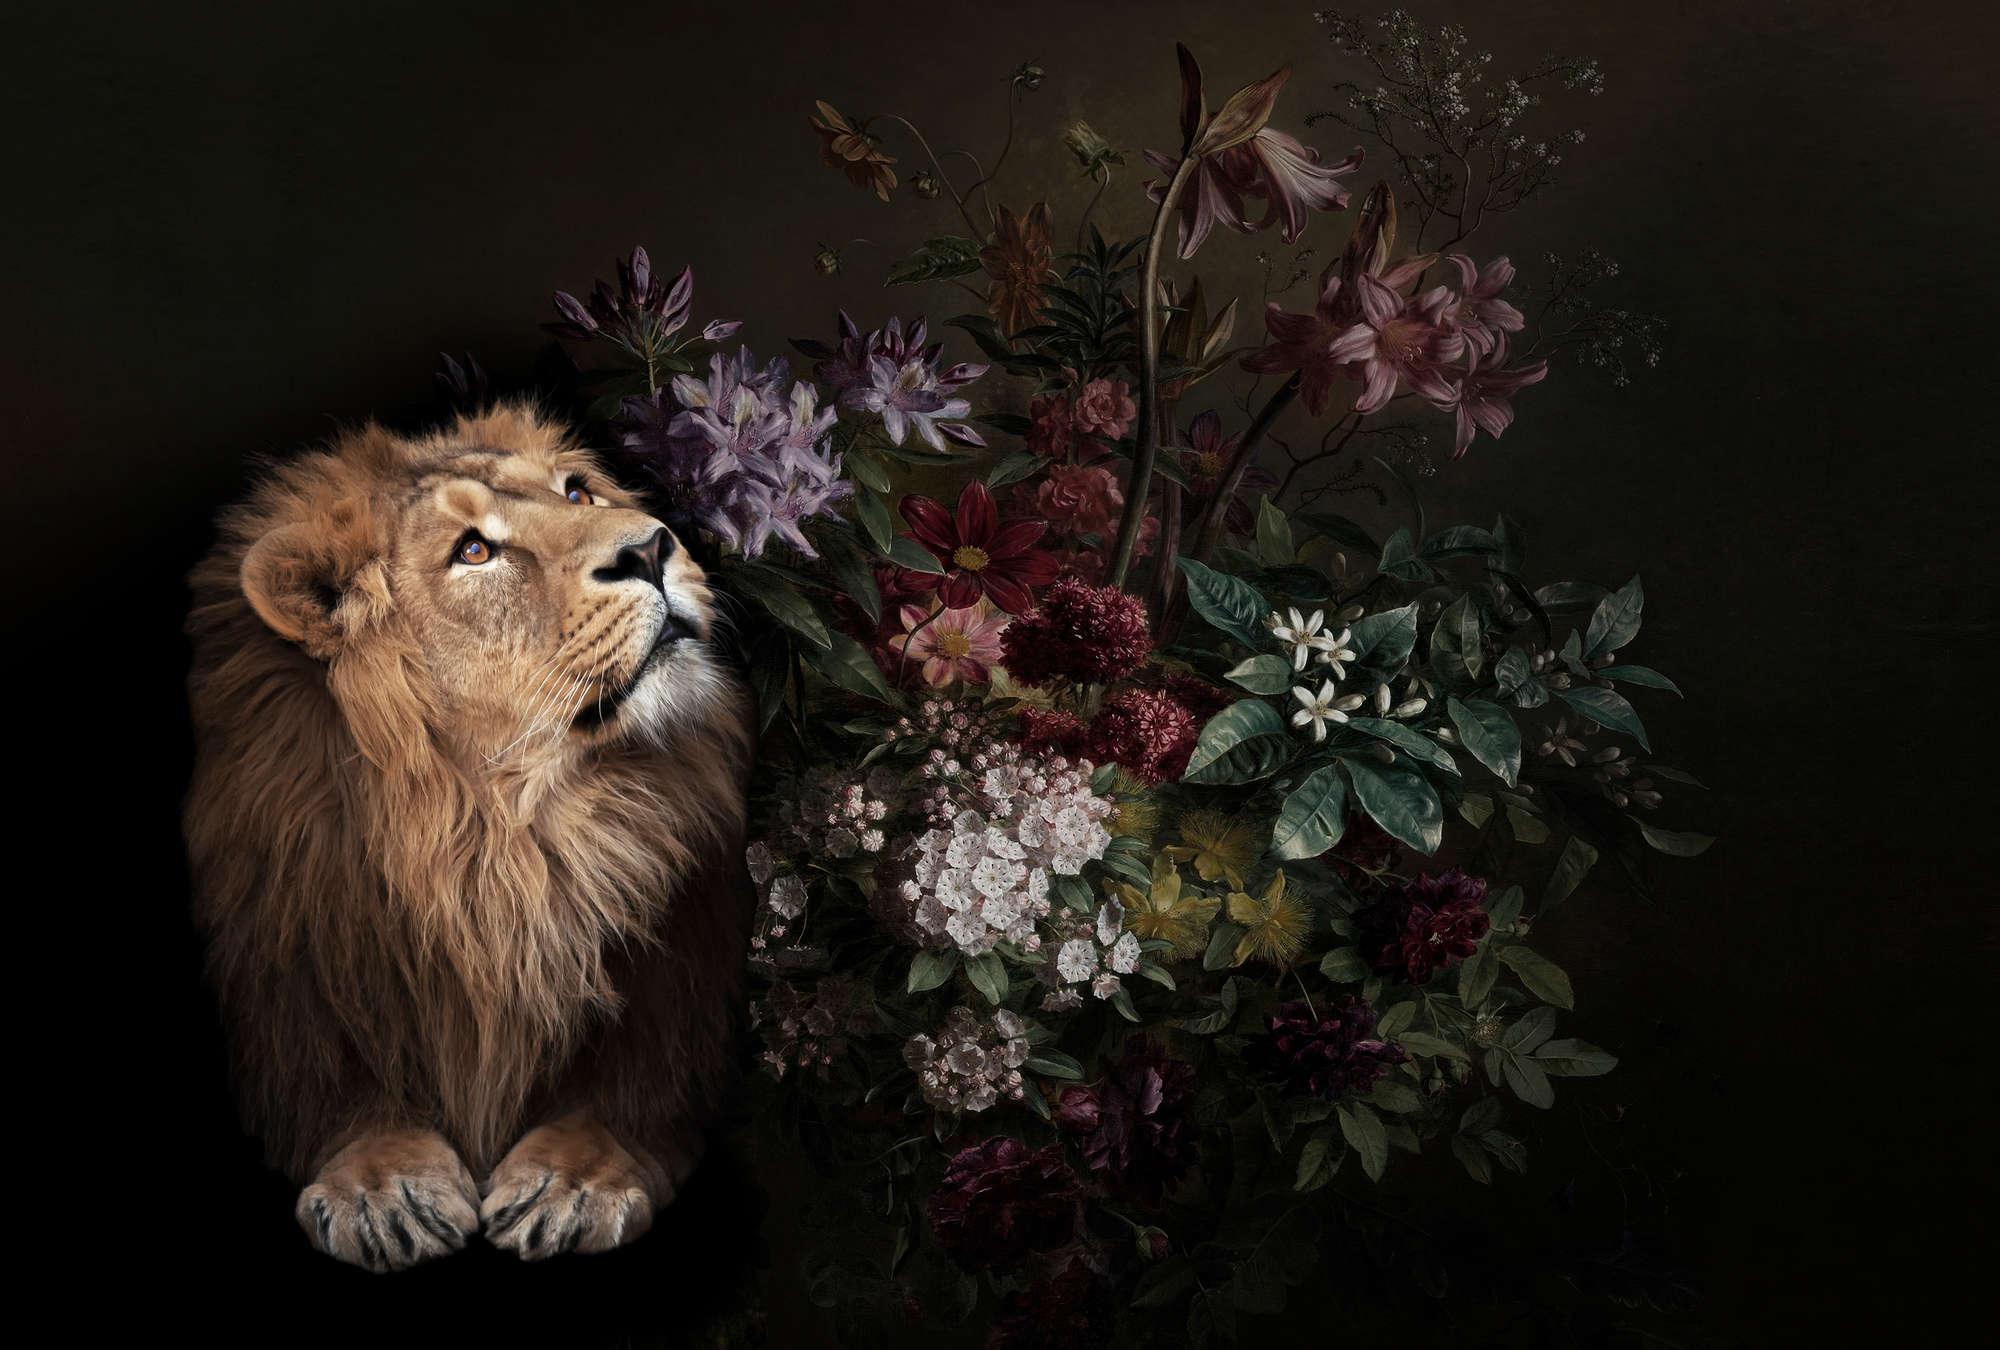             Papier peint panoramique Portrait de lion avec fleurs - Walls by Patel
        